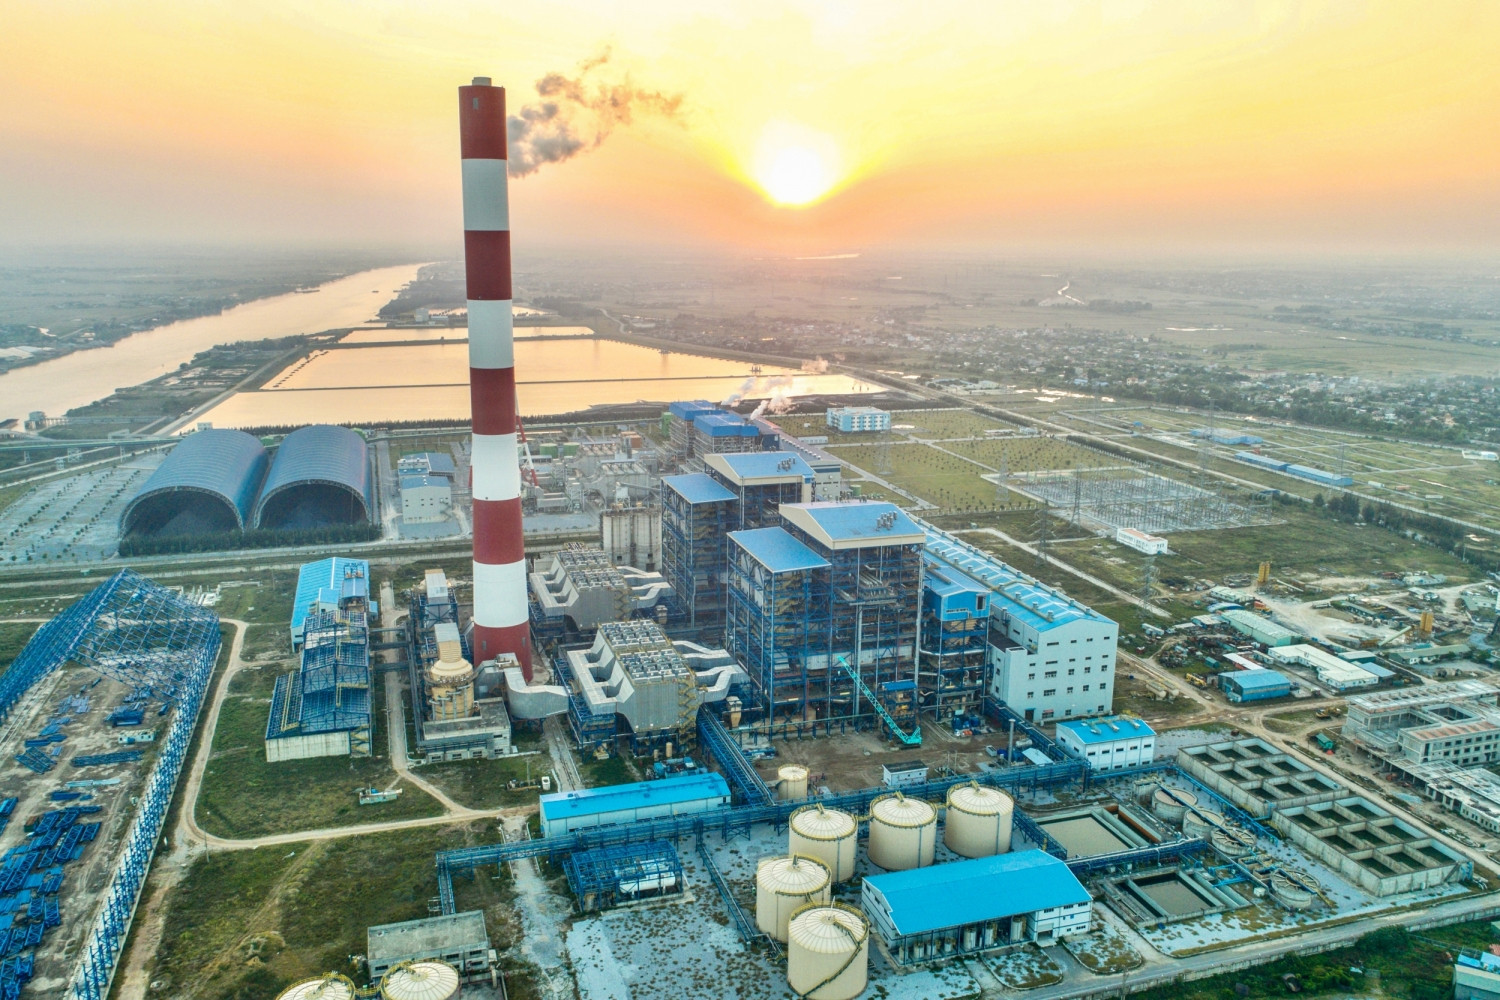 Dự án NMNĐ Thái Bình 2, ngày 23/2/2022 dự kiến sẽ đốt lửa bằng dầu lần đầu Tổ máy số 1, phấn đấu đưa nhà máy vào vận hành thương mại trong năm 2022.